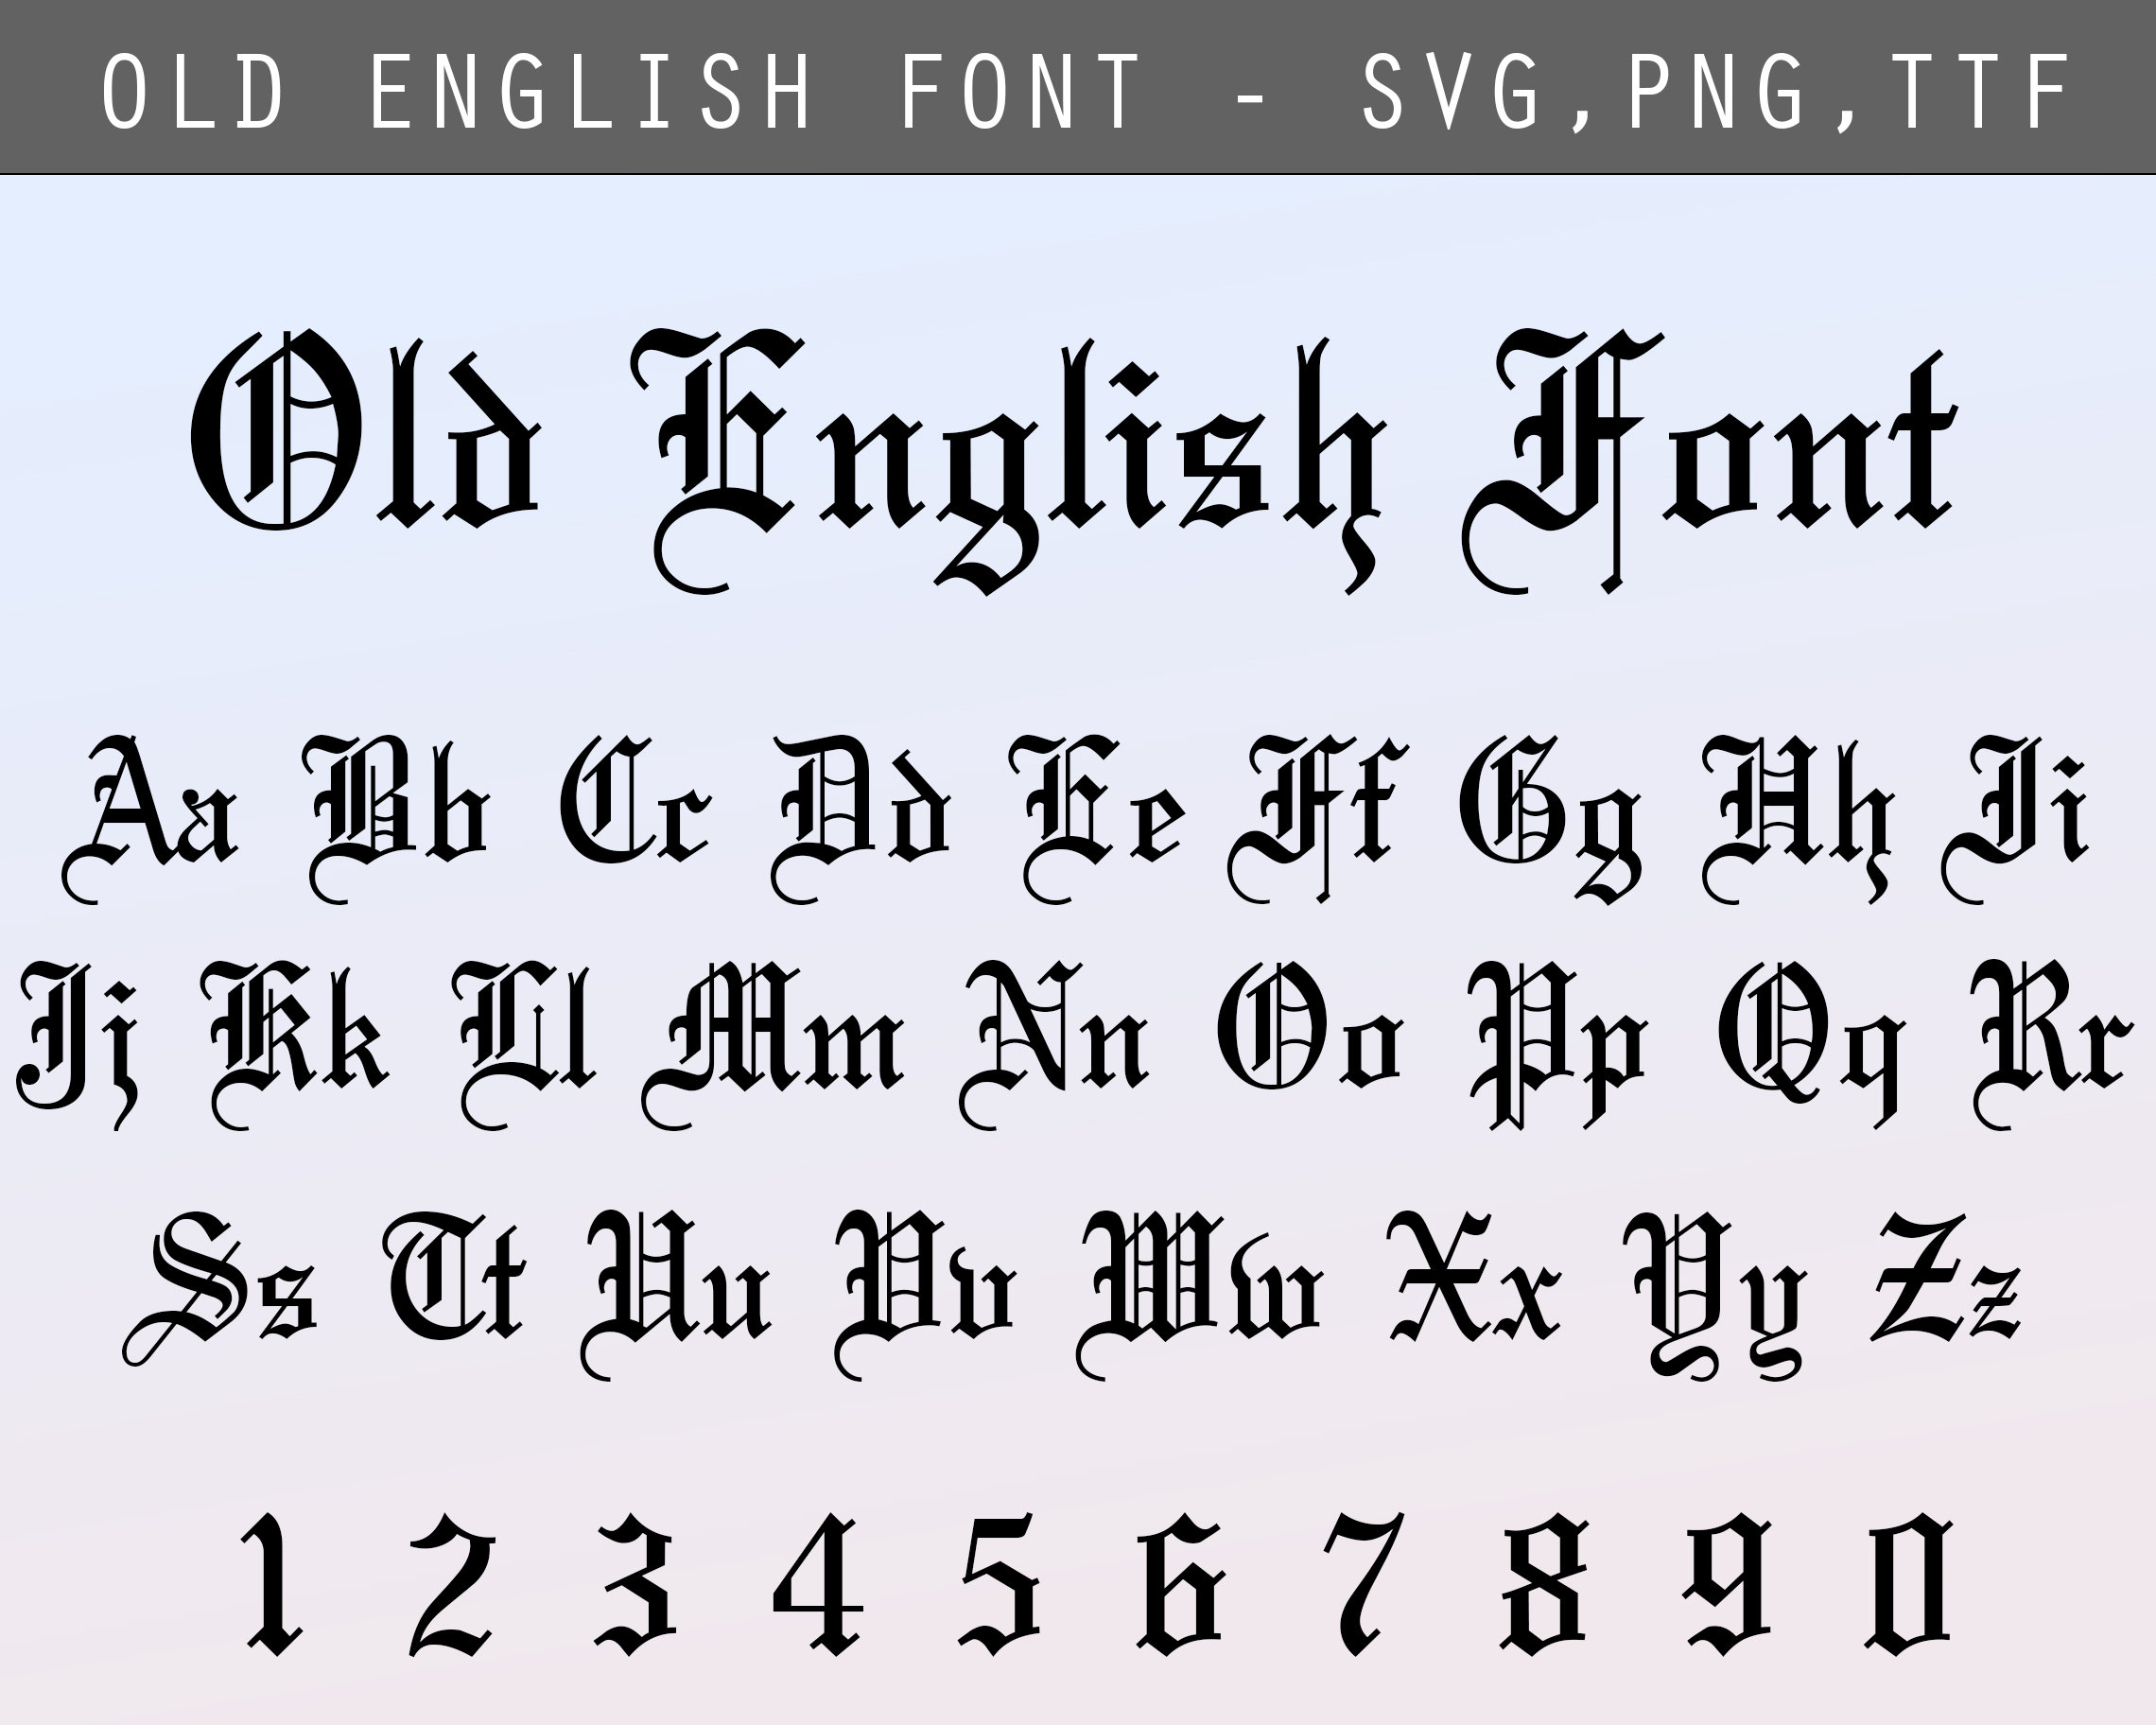 Với English Font SVG mới nhất tại Việt Nam vào năm 2024, bạn sẽ thấy rõ sự tiến bộ và sự tiện lợi của định dạng SVG. Với khả năng tương thích với nhiều loại máy tính và thiết bị khác nhau, bạn sẽ không gặp vấn đề khi sử dụng các kiểu chữ này trên bất kỳ thiết kế nào của mình. Hãy xem hình ảnh liên quan đến English Font SVG Vietnam 2024 để tìm hiểu thêm.